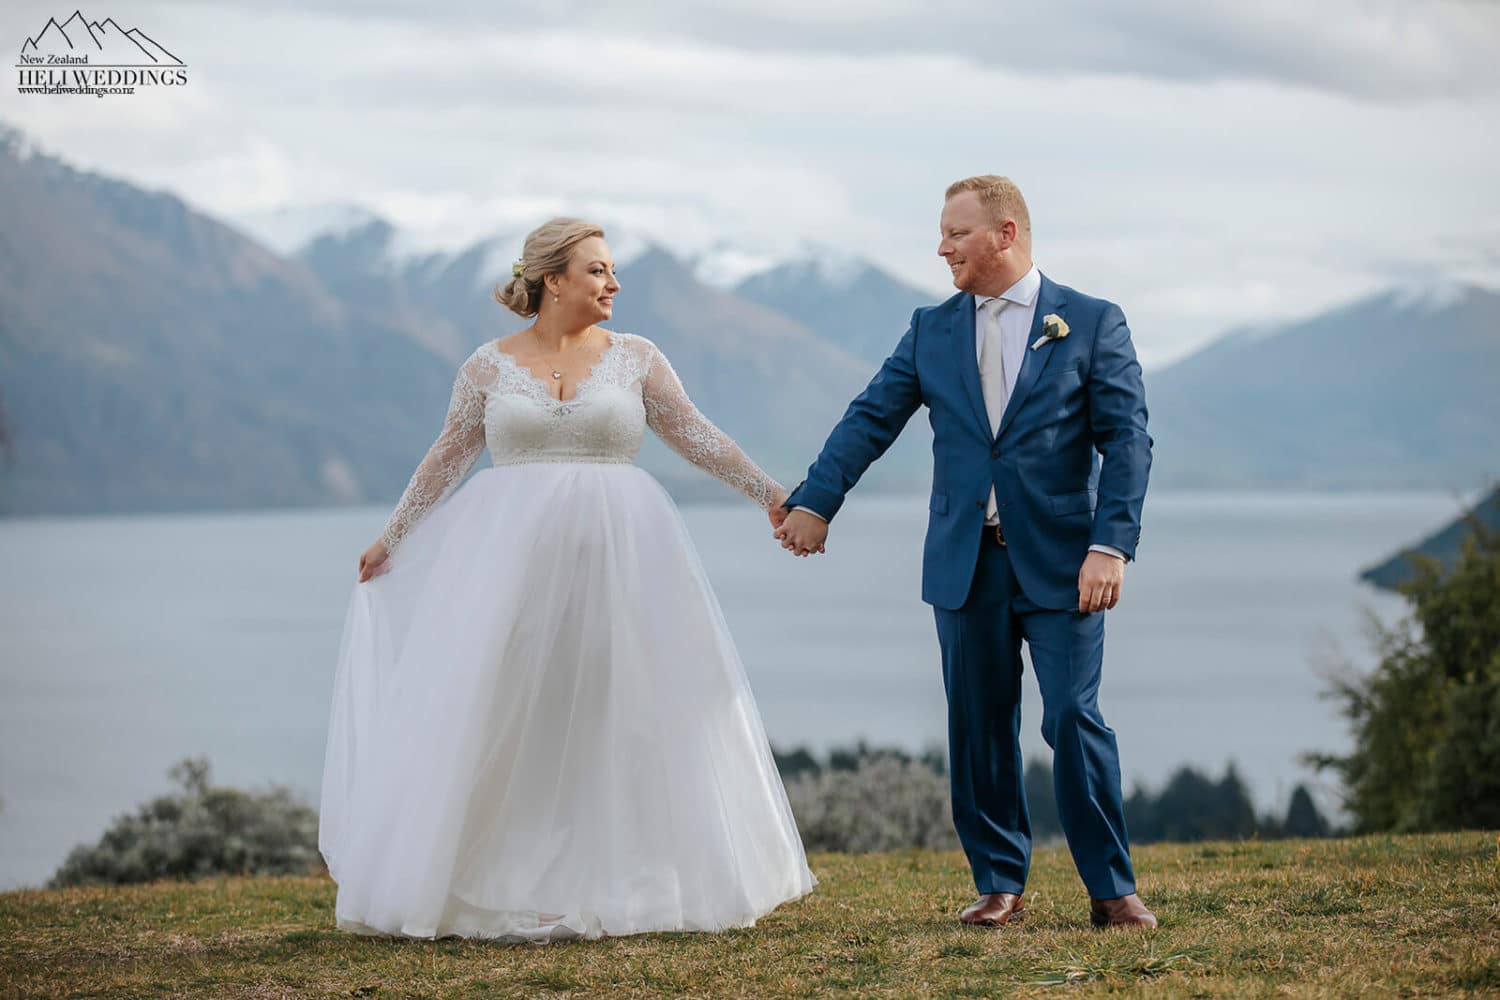 Elopement wedding in Queenstown New Zealand